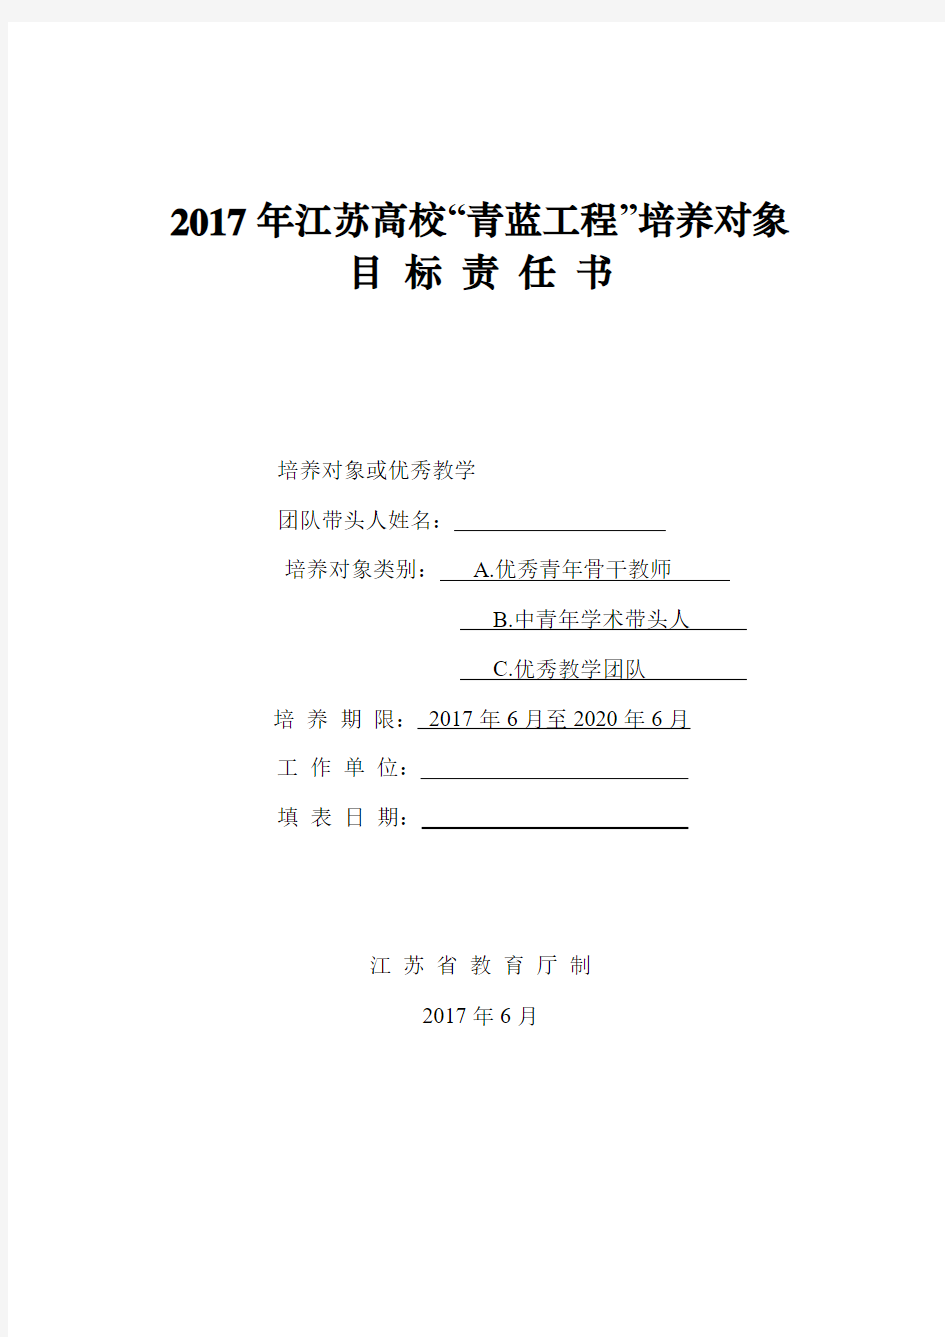 2017年江苏高校青蓝工程培养对象